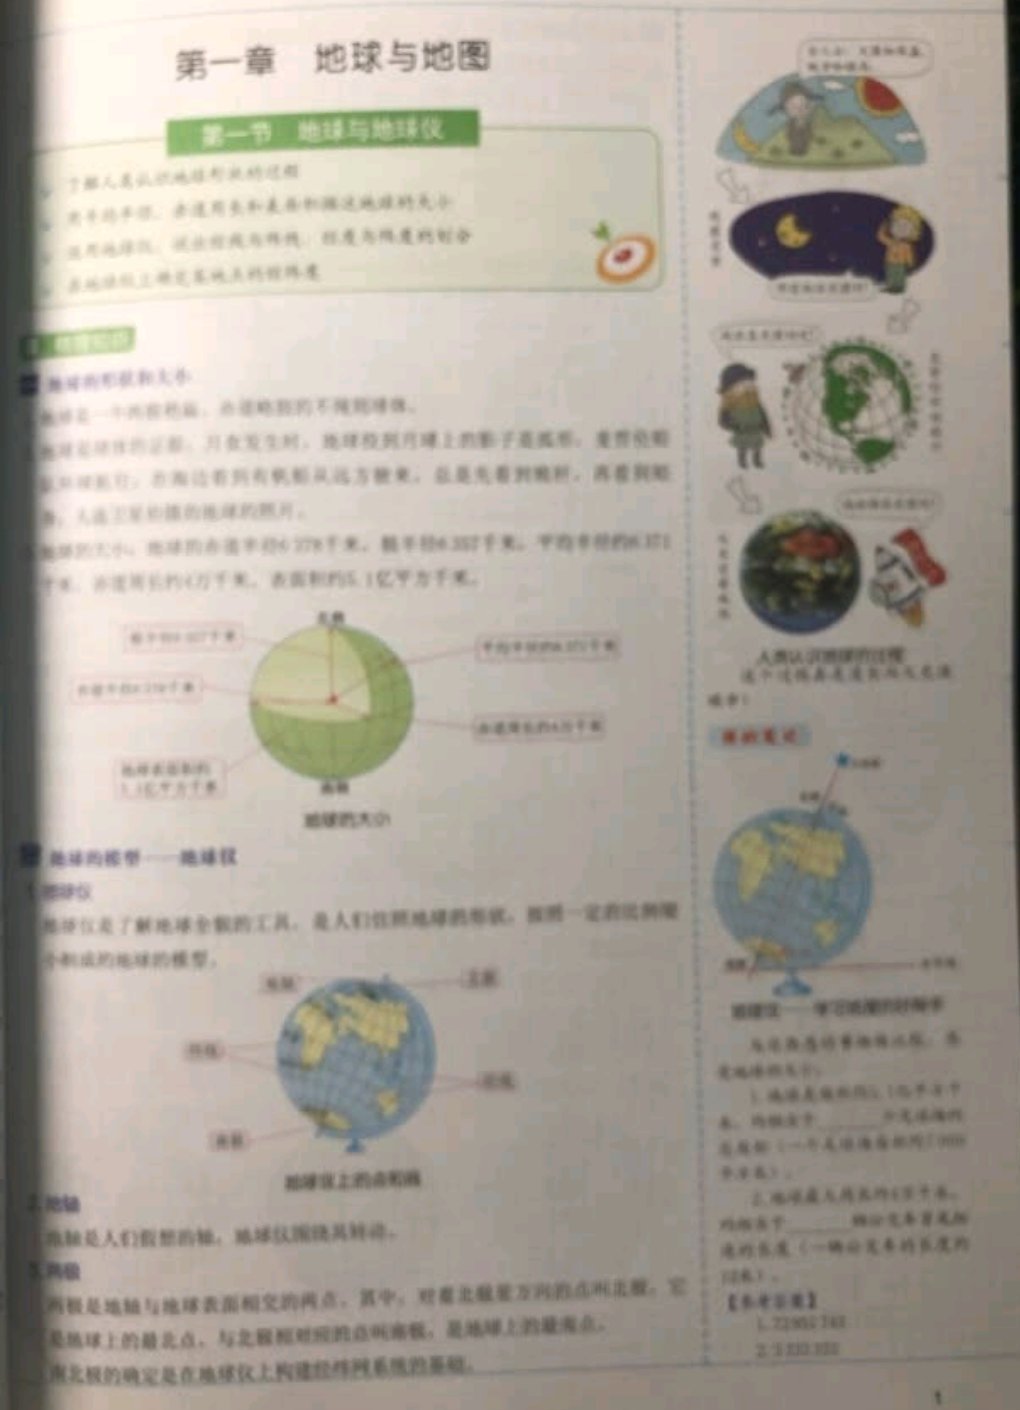 嗯，很喜欢手绘地图。 ... 嗯，我初中那地理老师将中国地理的，从来只带一副地图， 就是一个小黑板上画着中国 .... 如知识青年地图册等等,更让人高兴的是搞到一本大 8K的四川省地图册,70年代初出版, .... 这本地理手绘很不错, 对学习地理很有帮助